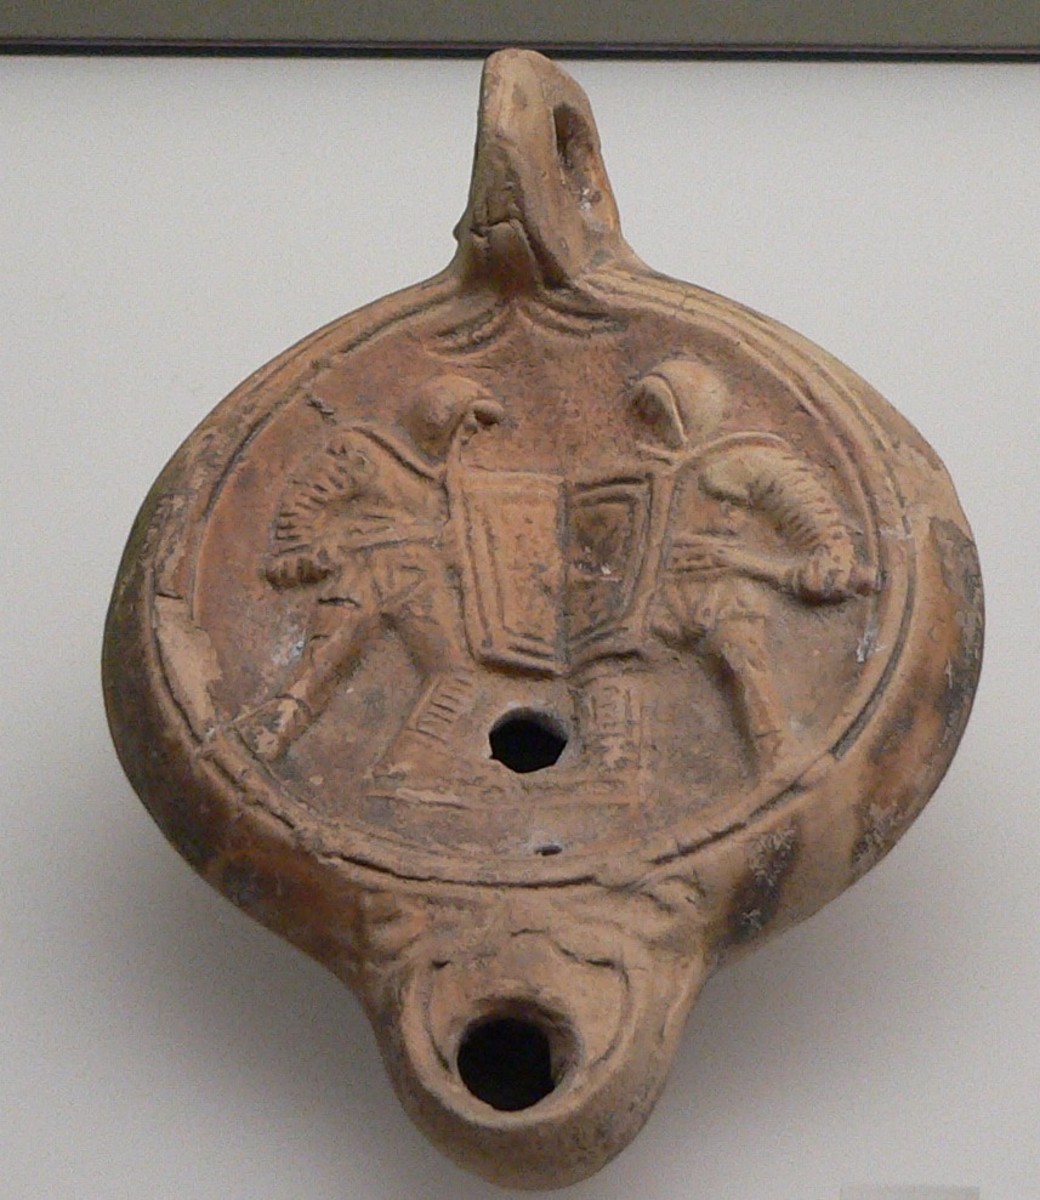 Photograph of an Ancient Roman Lamp